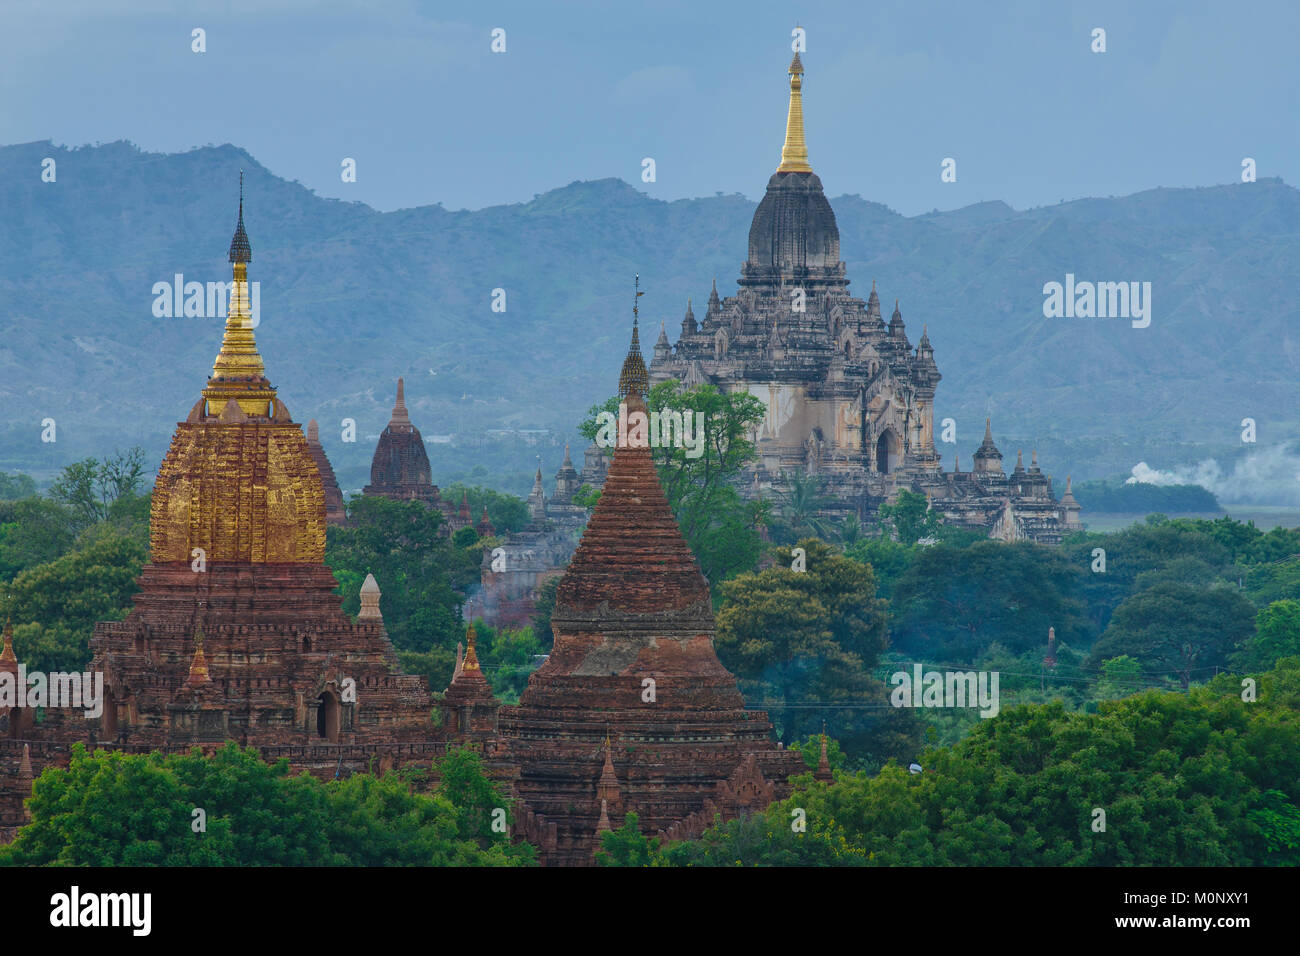 Temples and Pagodas,Bagan,Mandalay Division,Myanmar Stock Photo